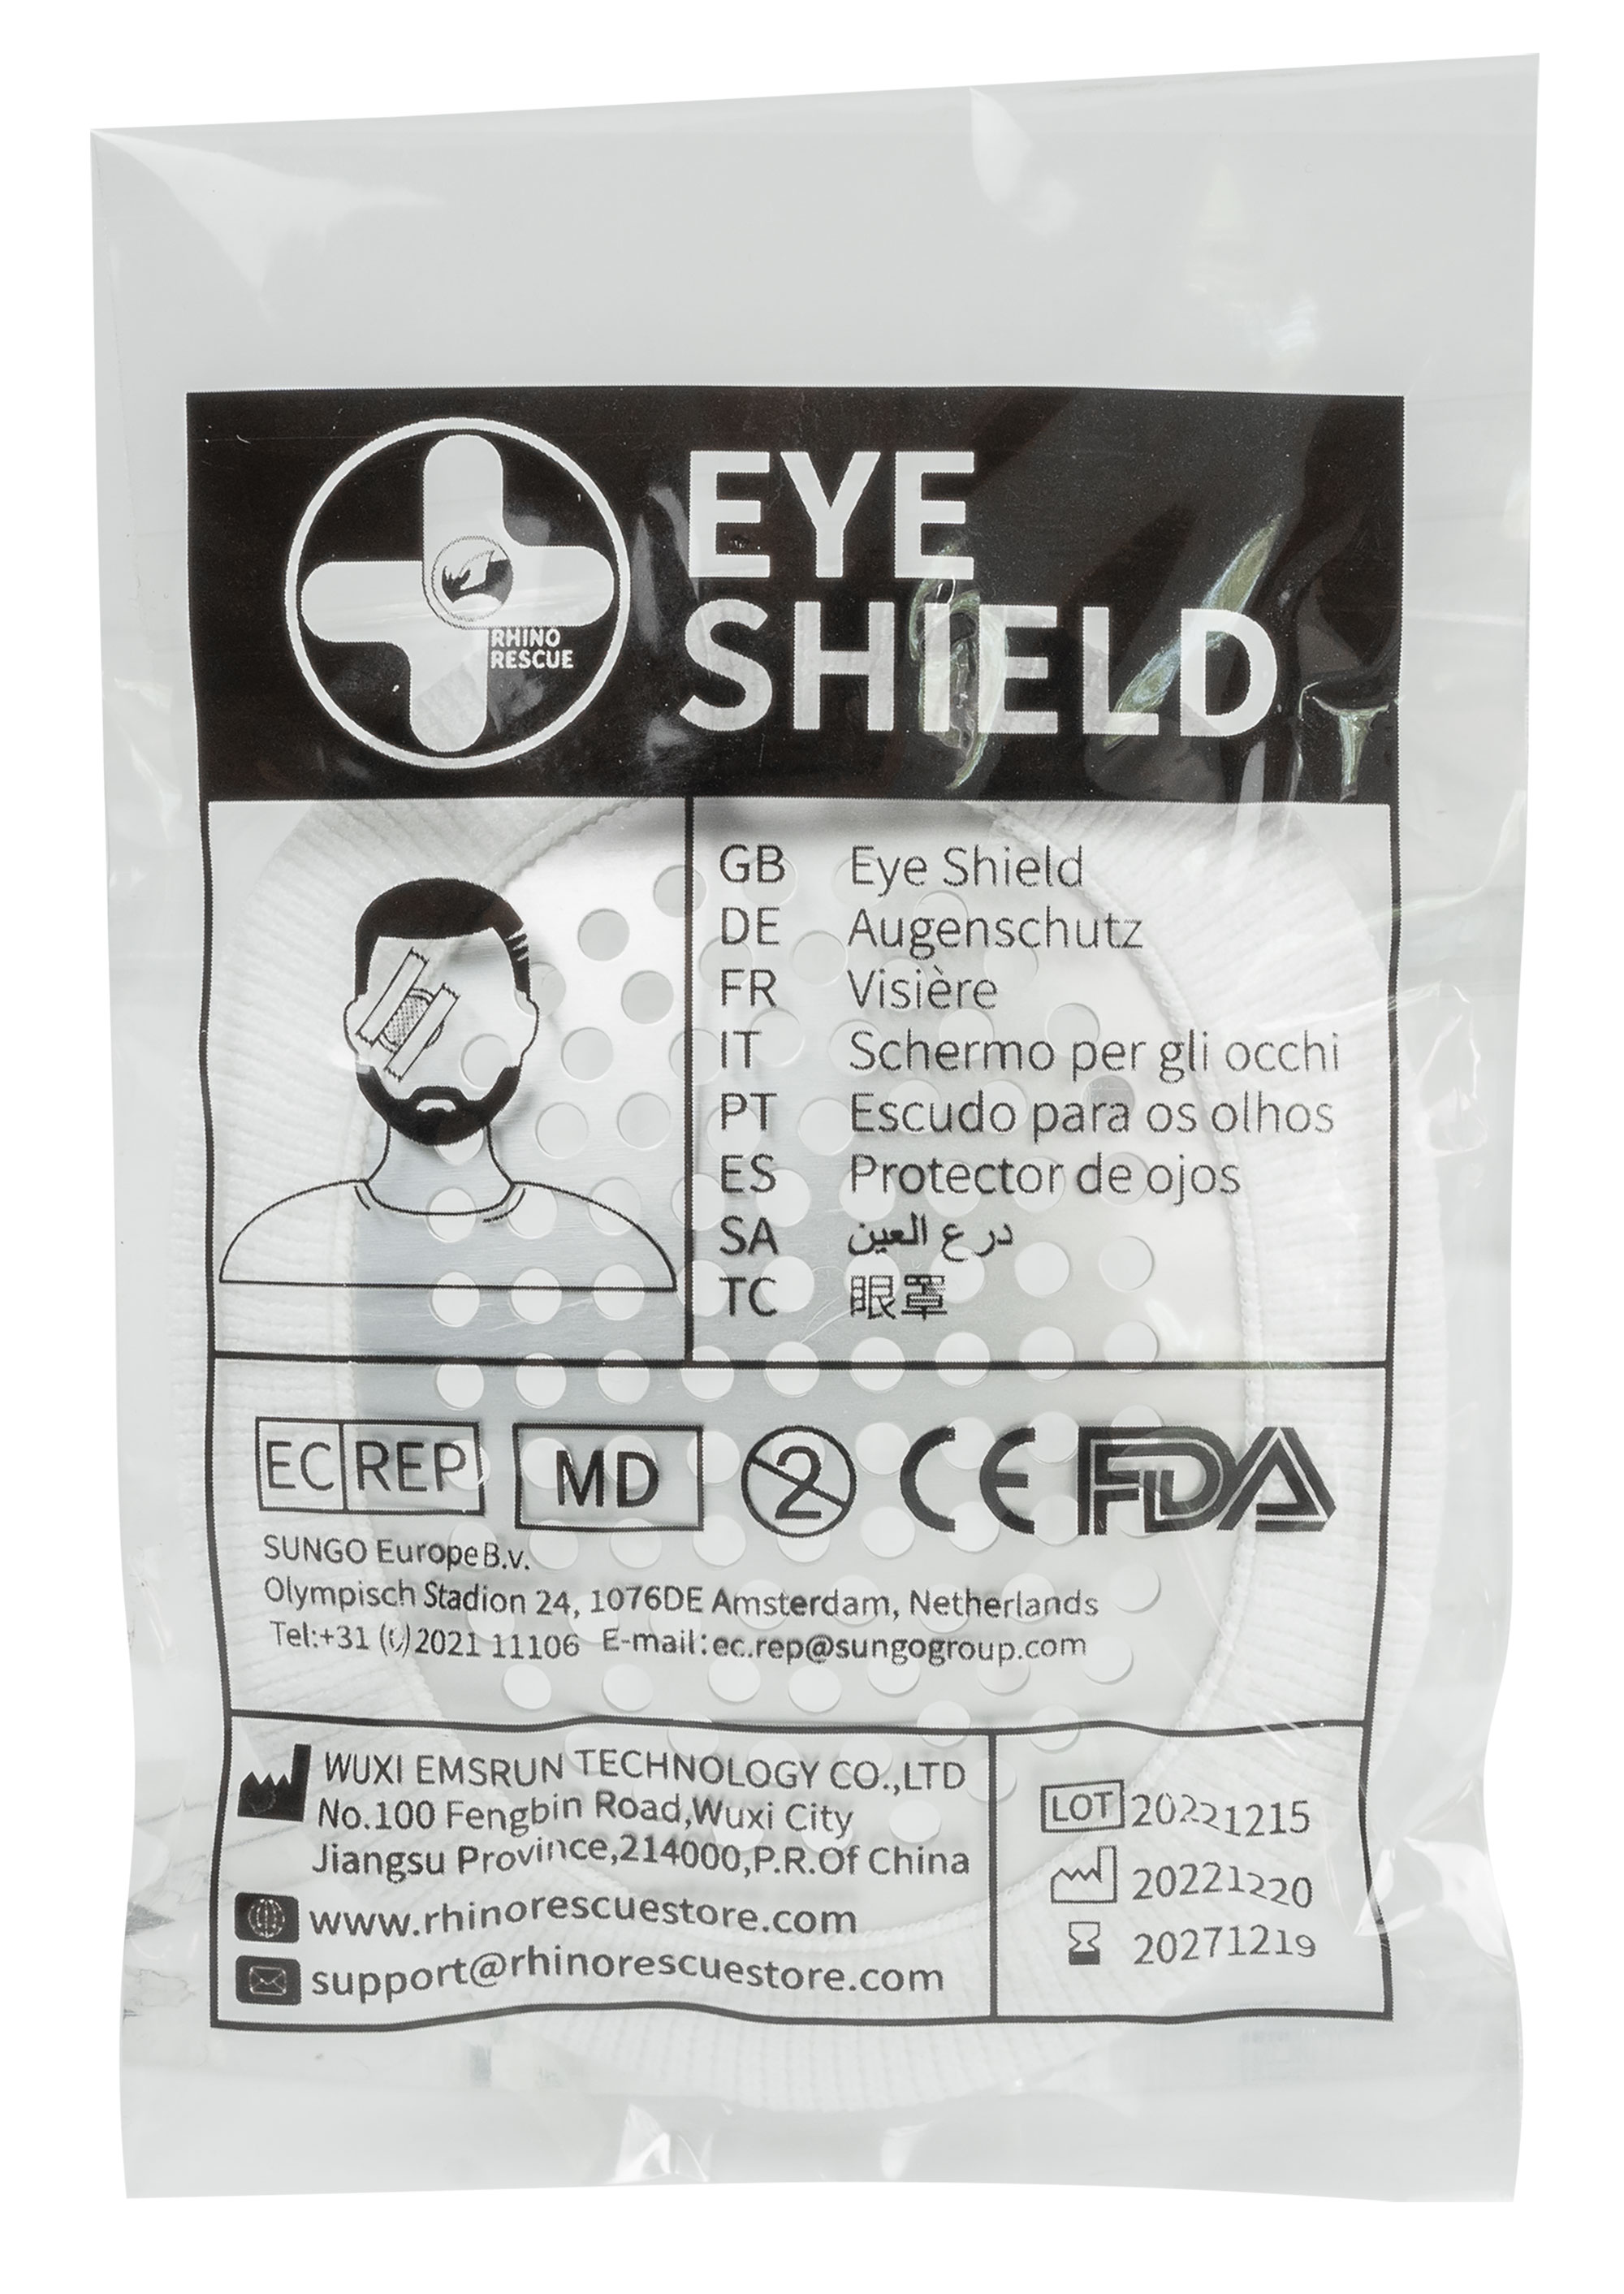 Rhino Rescue Eye Shield - Augenschutz